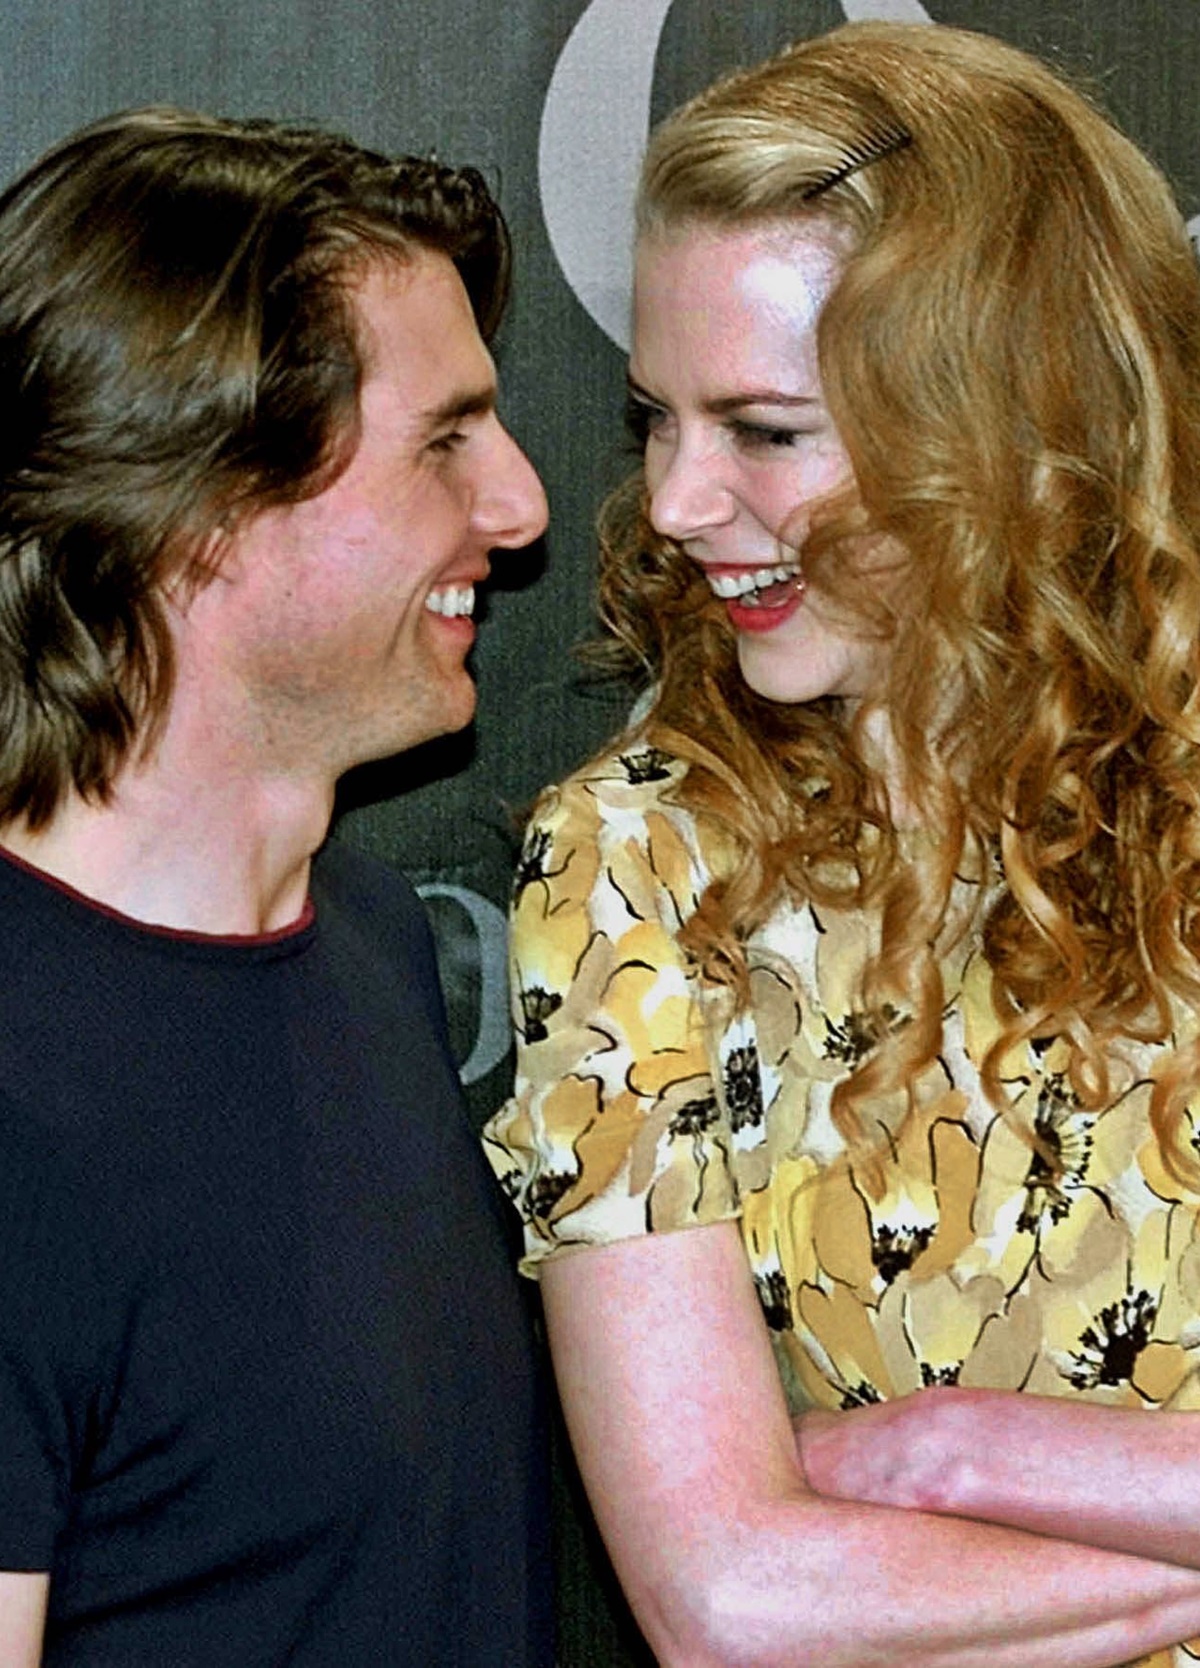 Nicole Kidman és Tom Cruise már egy párt alkottak, mikor felkérték őket egy romantikus filmre